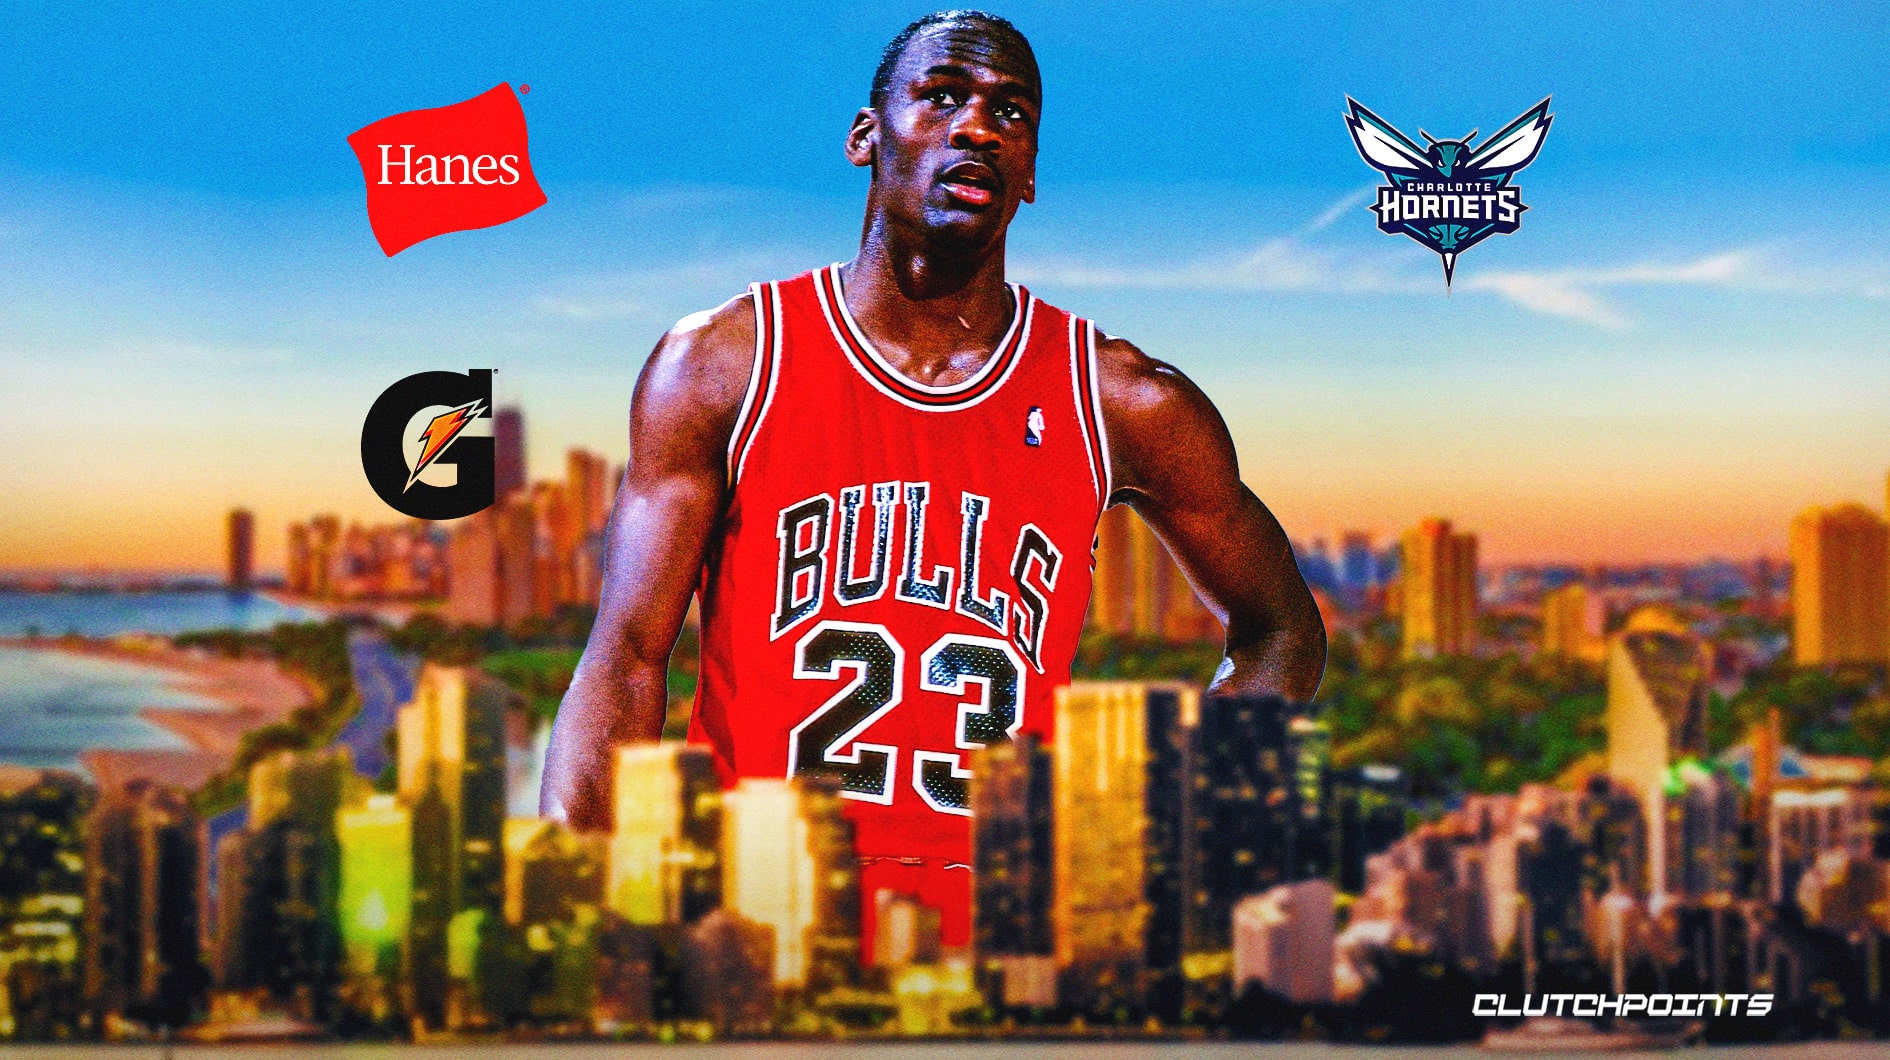 UNC MJ23  Jordan logo wallpaper, Nike wallpaper, Michael jordan